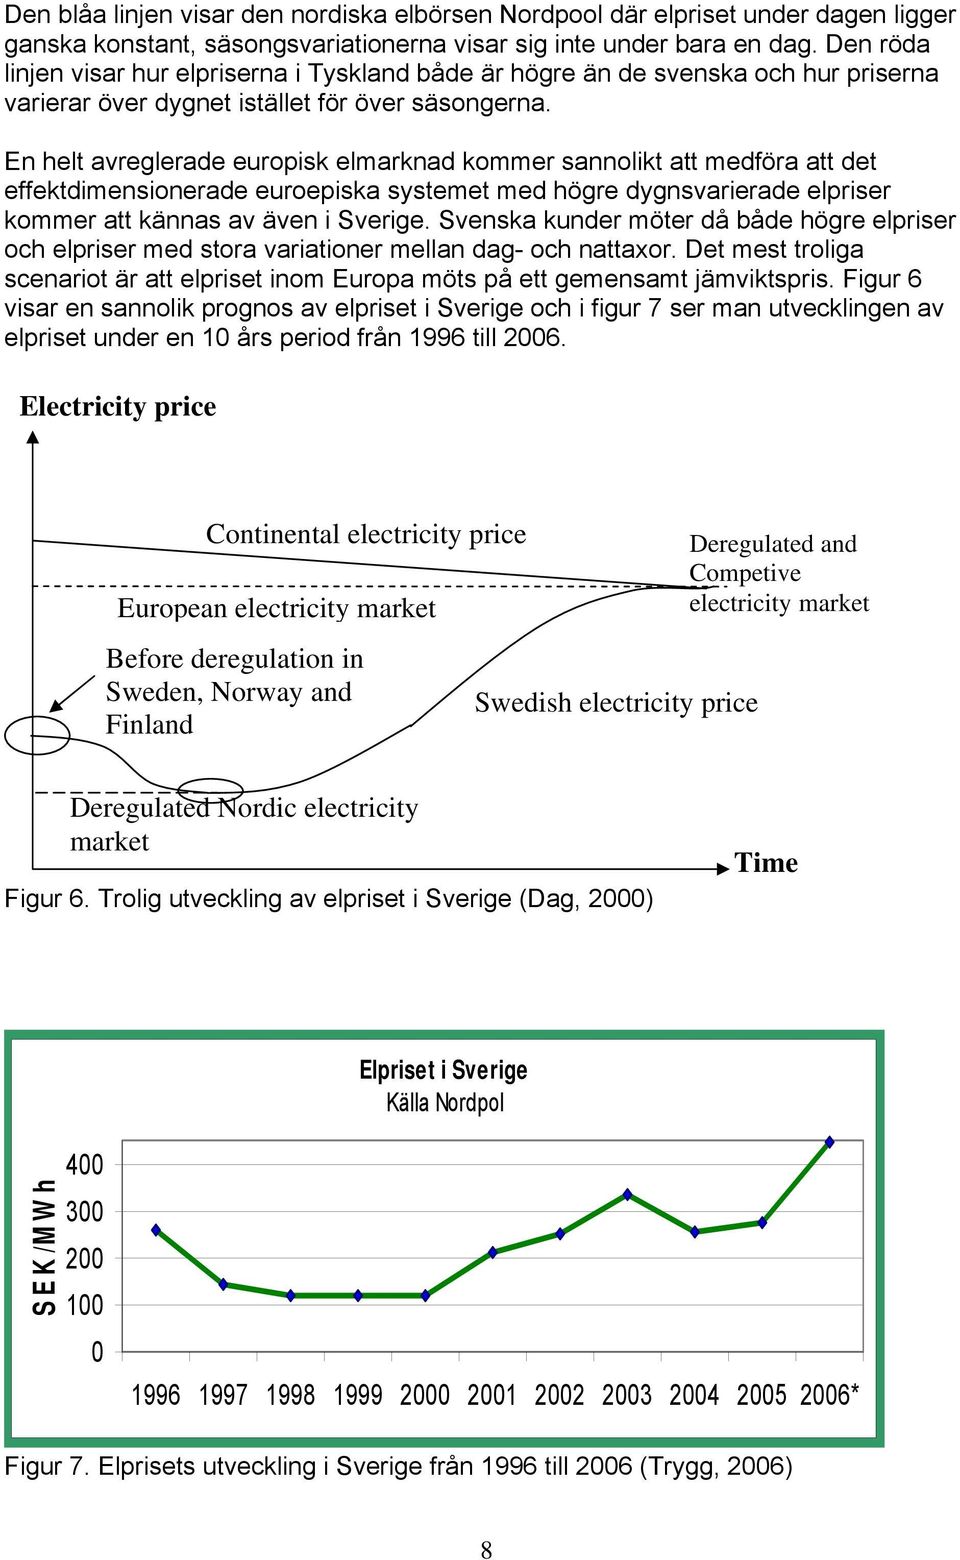 En helt avreglerade europisk elmarknad kommer sannolikt att medföra att det effektdimensionerade euroepiska systemet med högre dygnsvarierade elpriser kommer att kännas av även i Sverige.